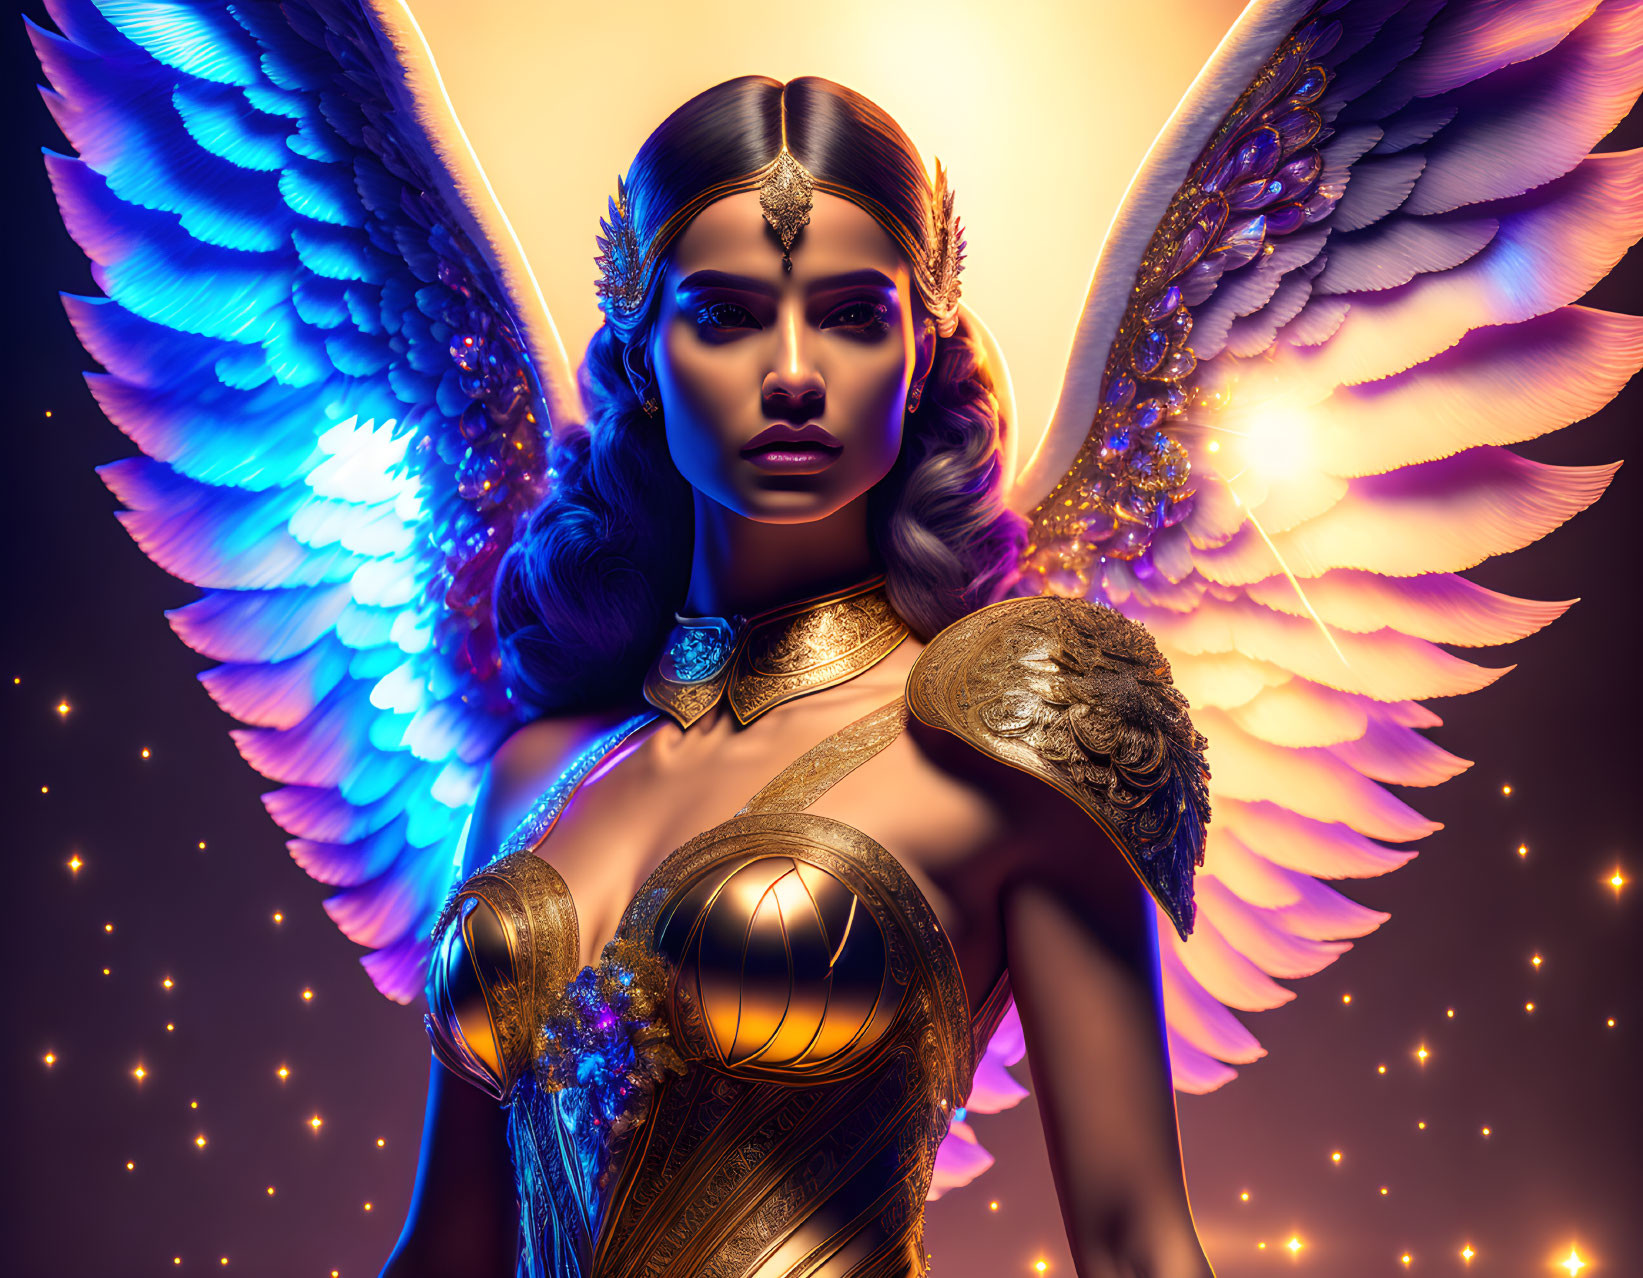 Exquisitely beautiful angel in golden armor